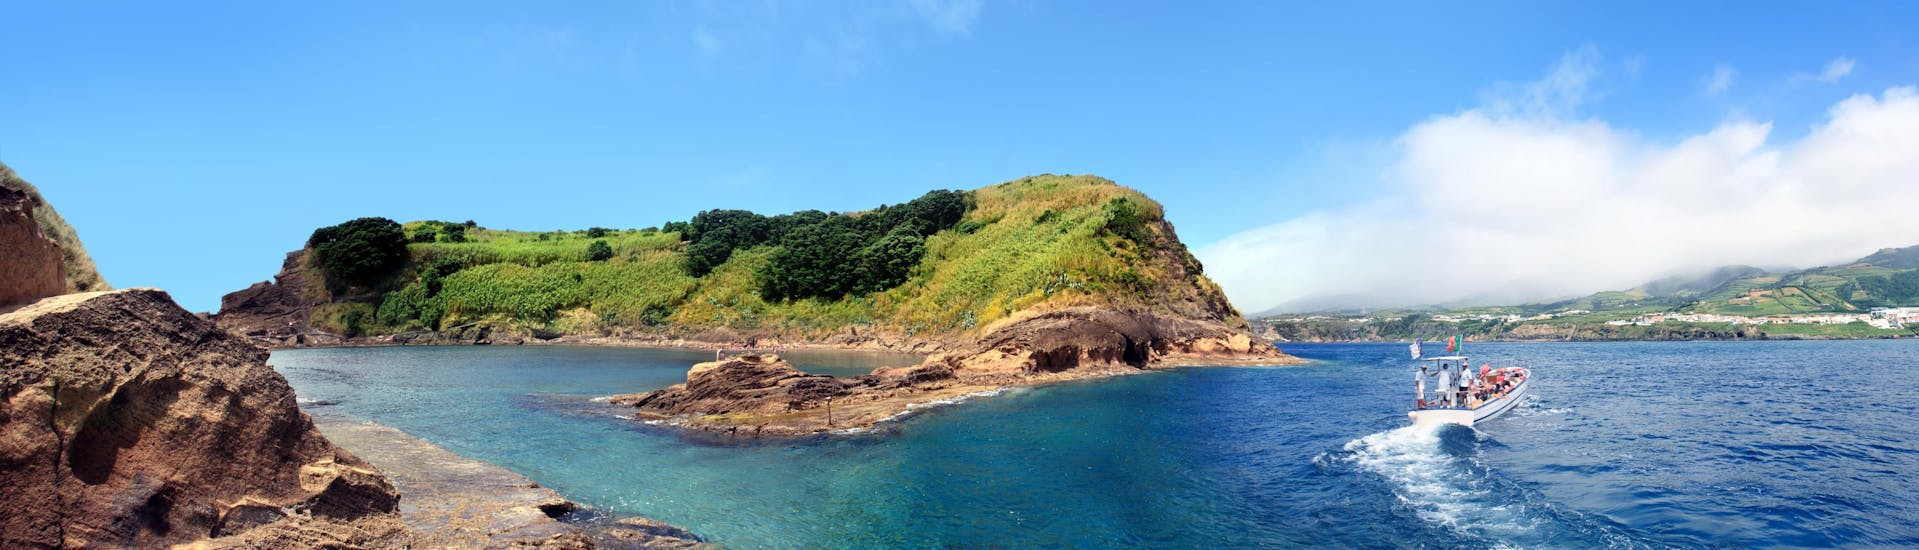 Uitzicht op het eilandje Vila Franca do Campo, een populaire bestemming voor boottochten op de Azoren.